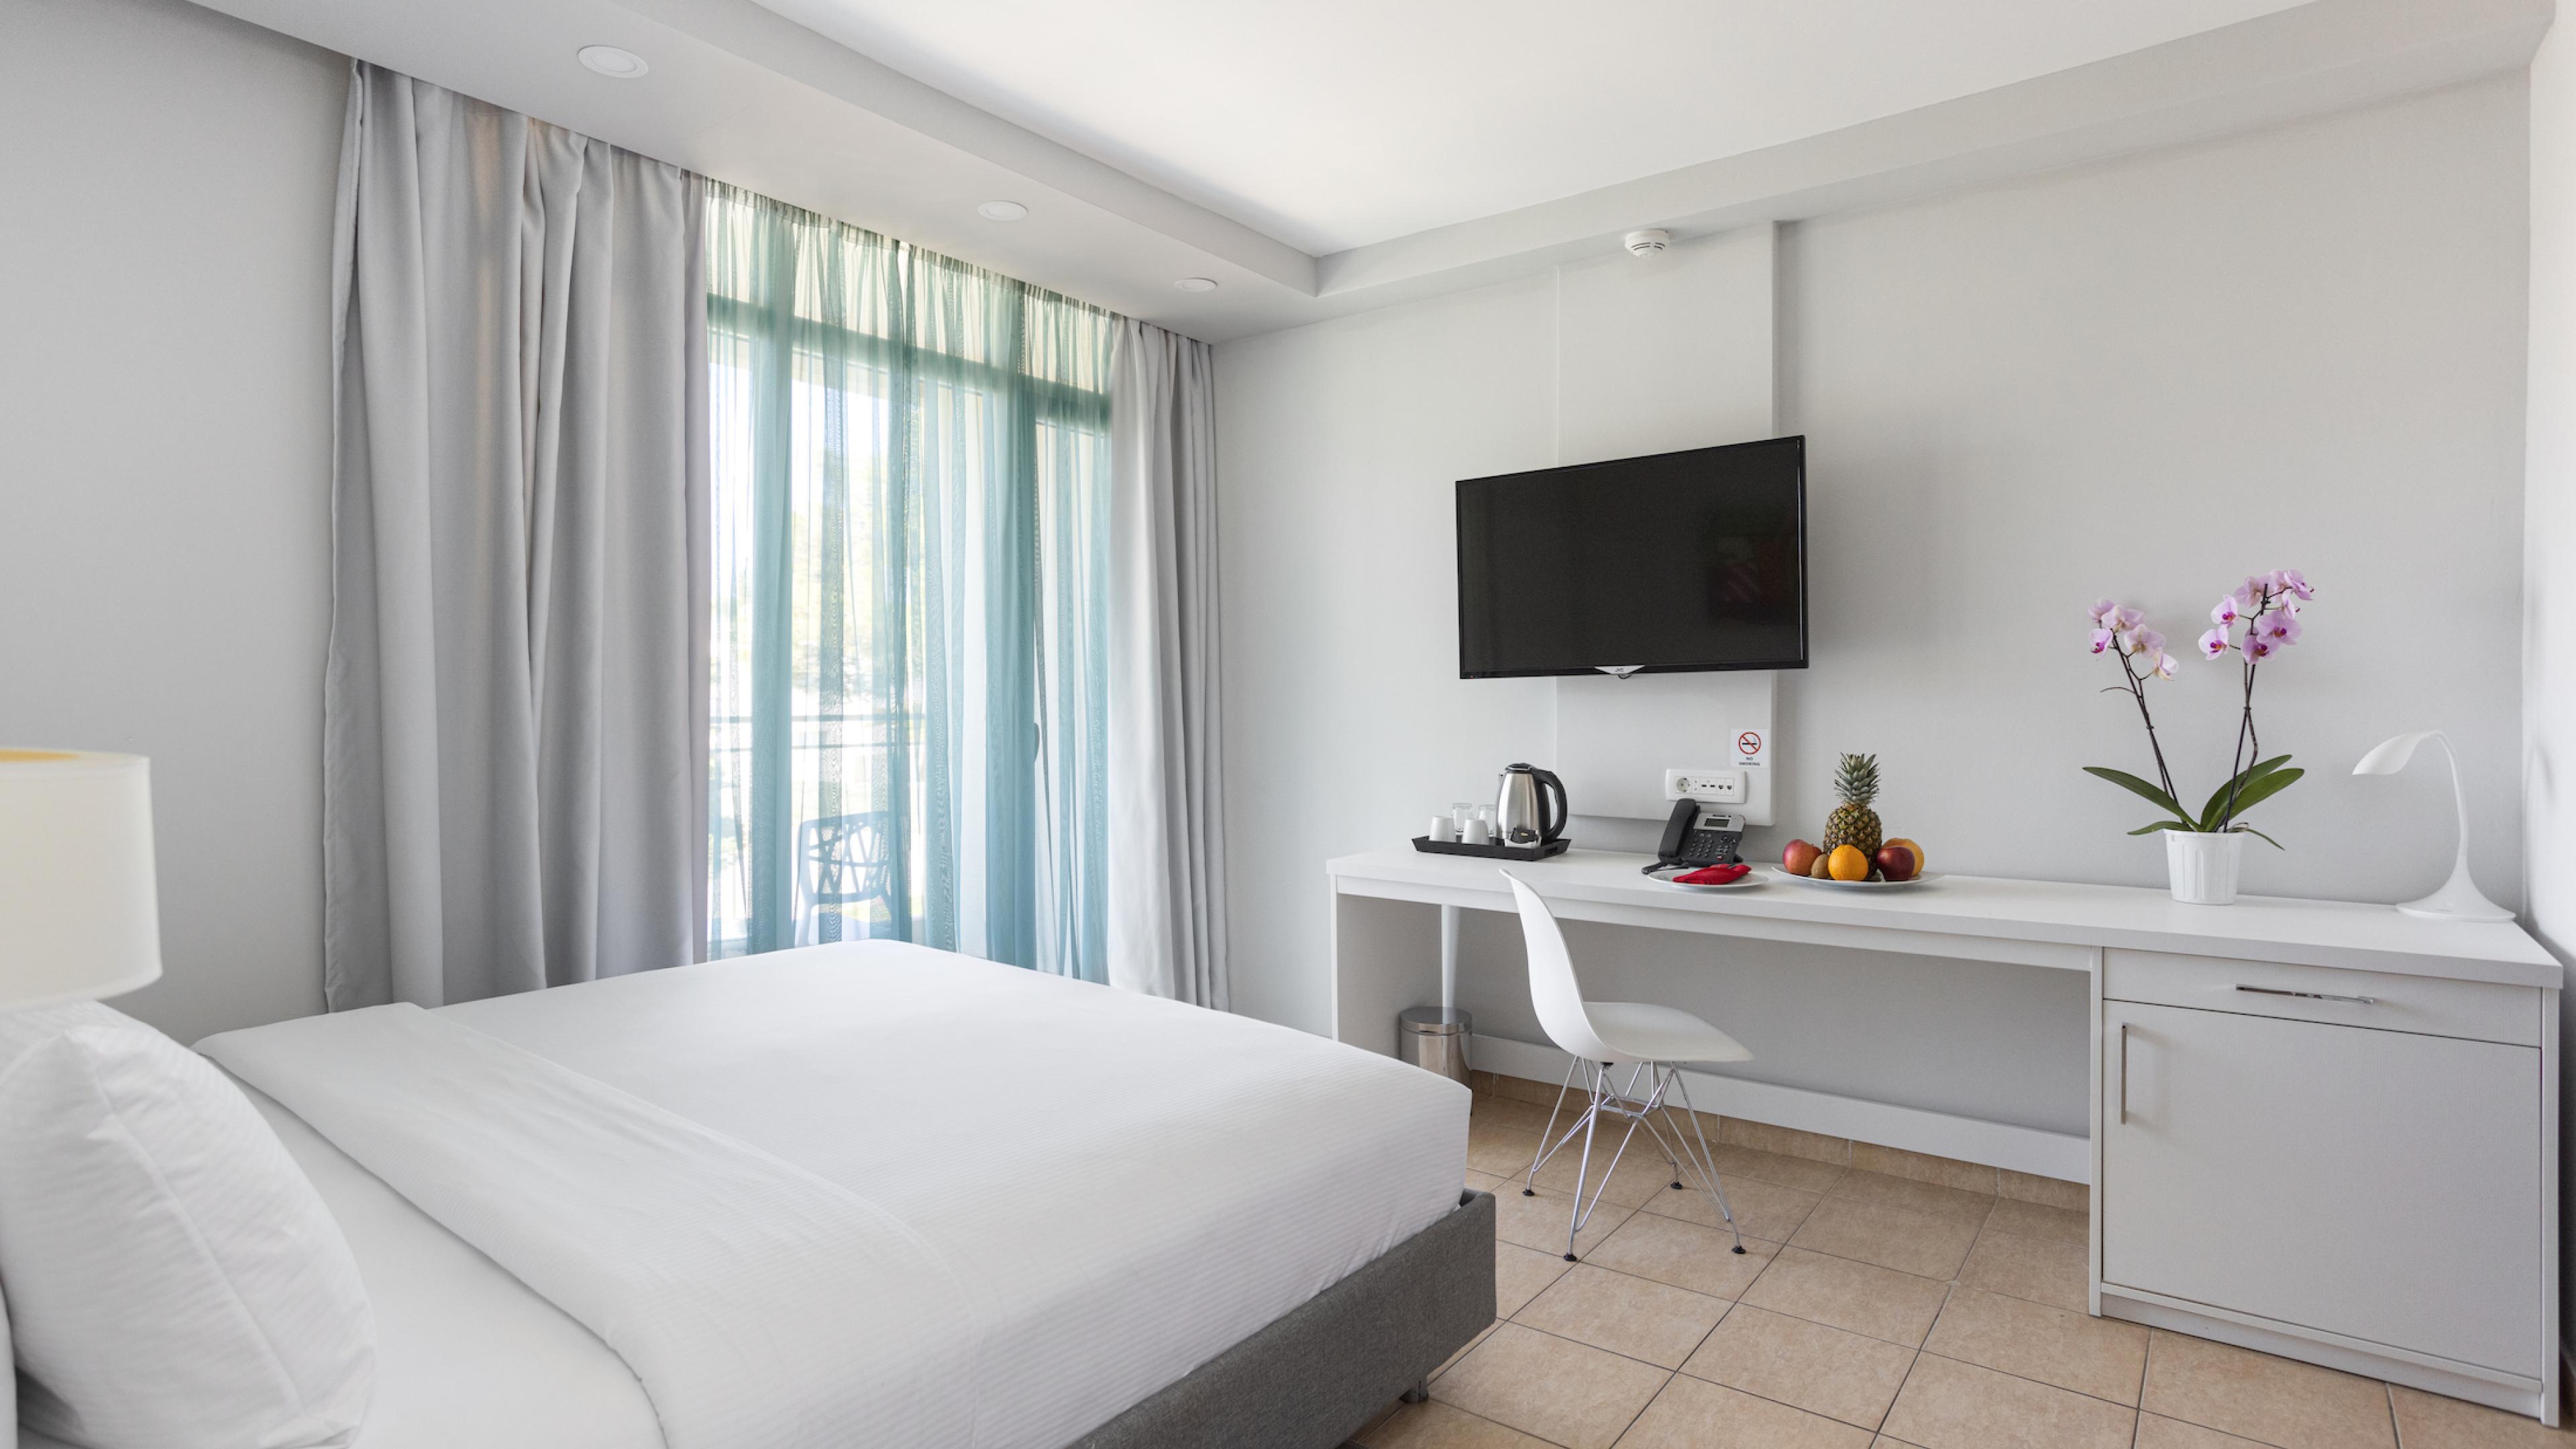 Azul Beach Resort Montenegro - Two bedroom swim-up suite